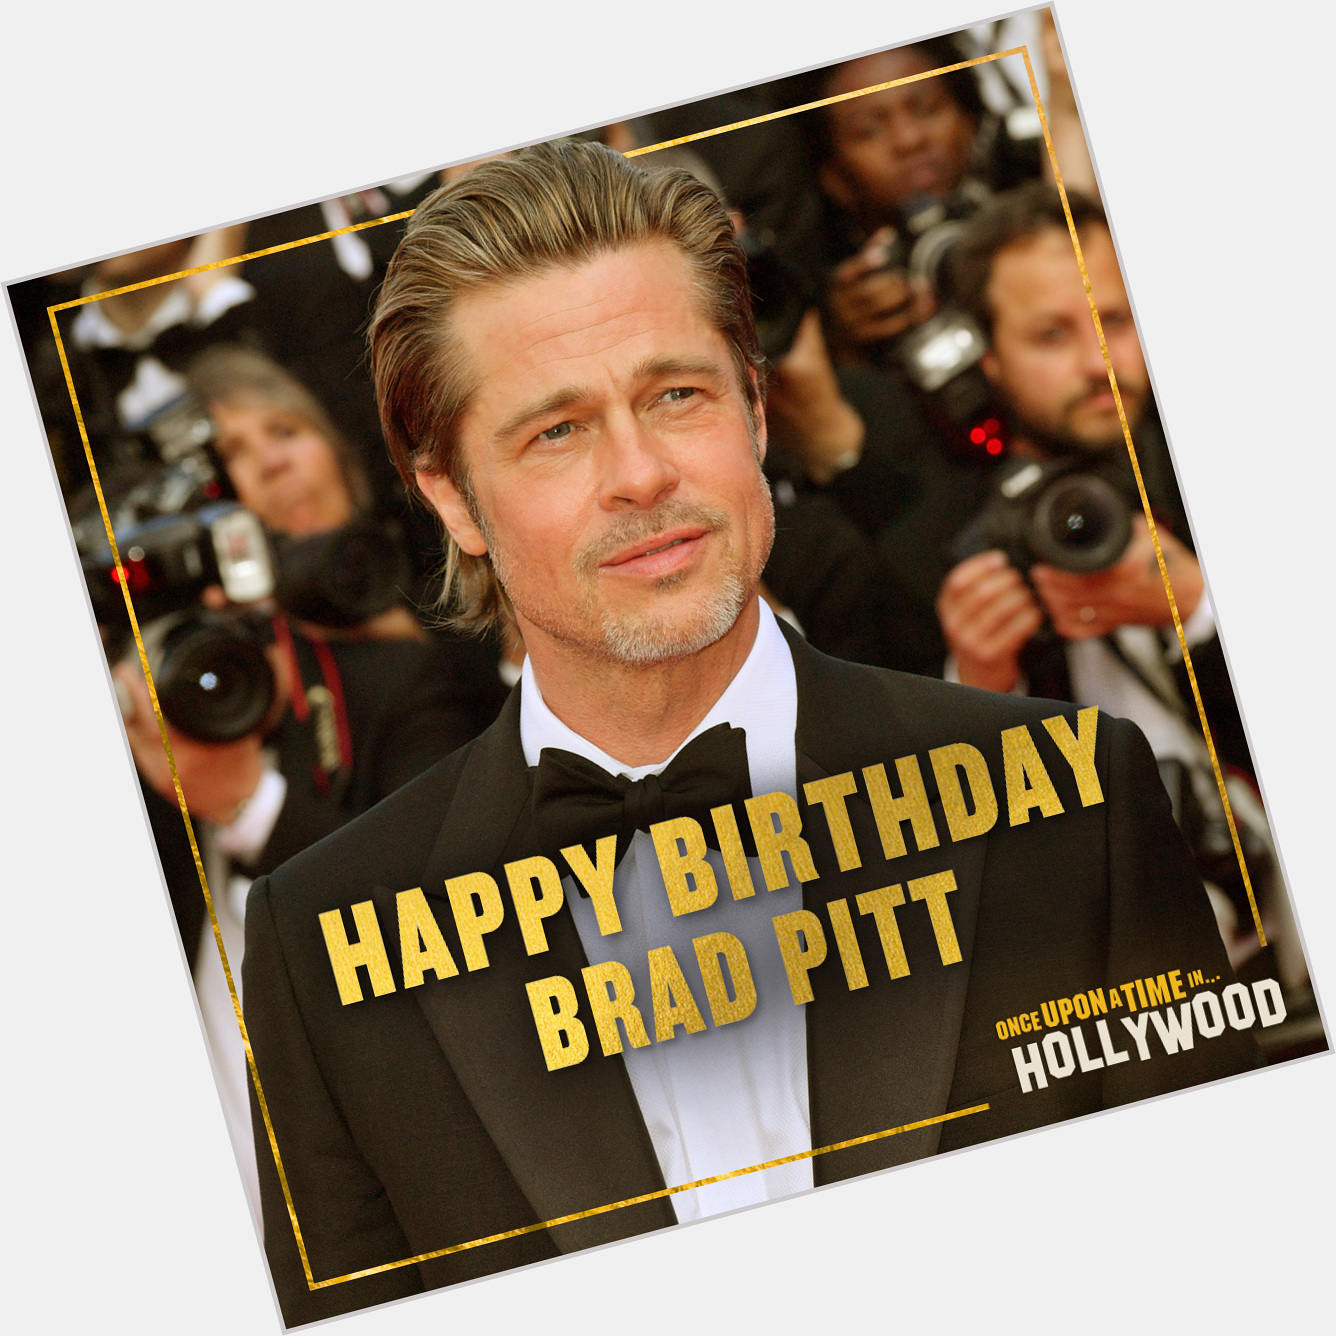 Happy birthday to Brad Pitt! 